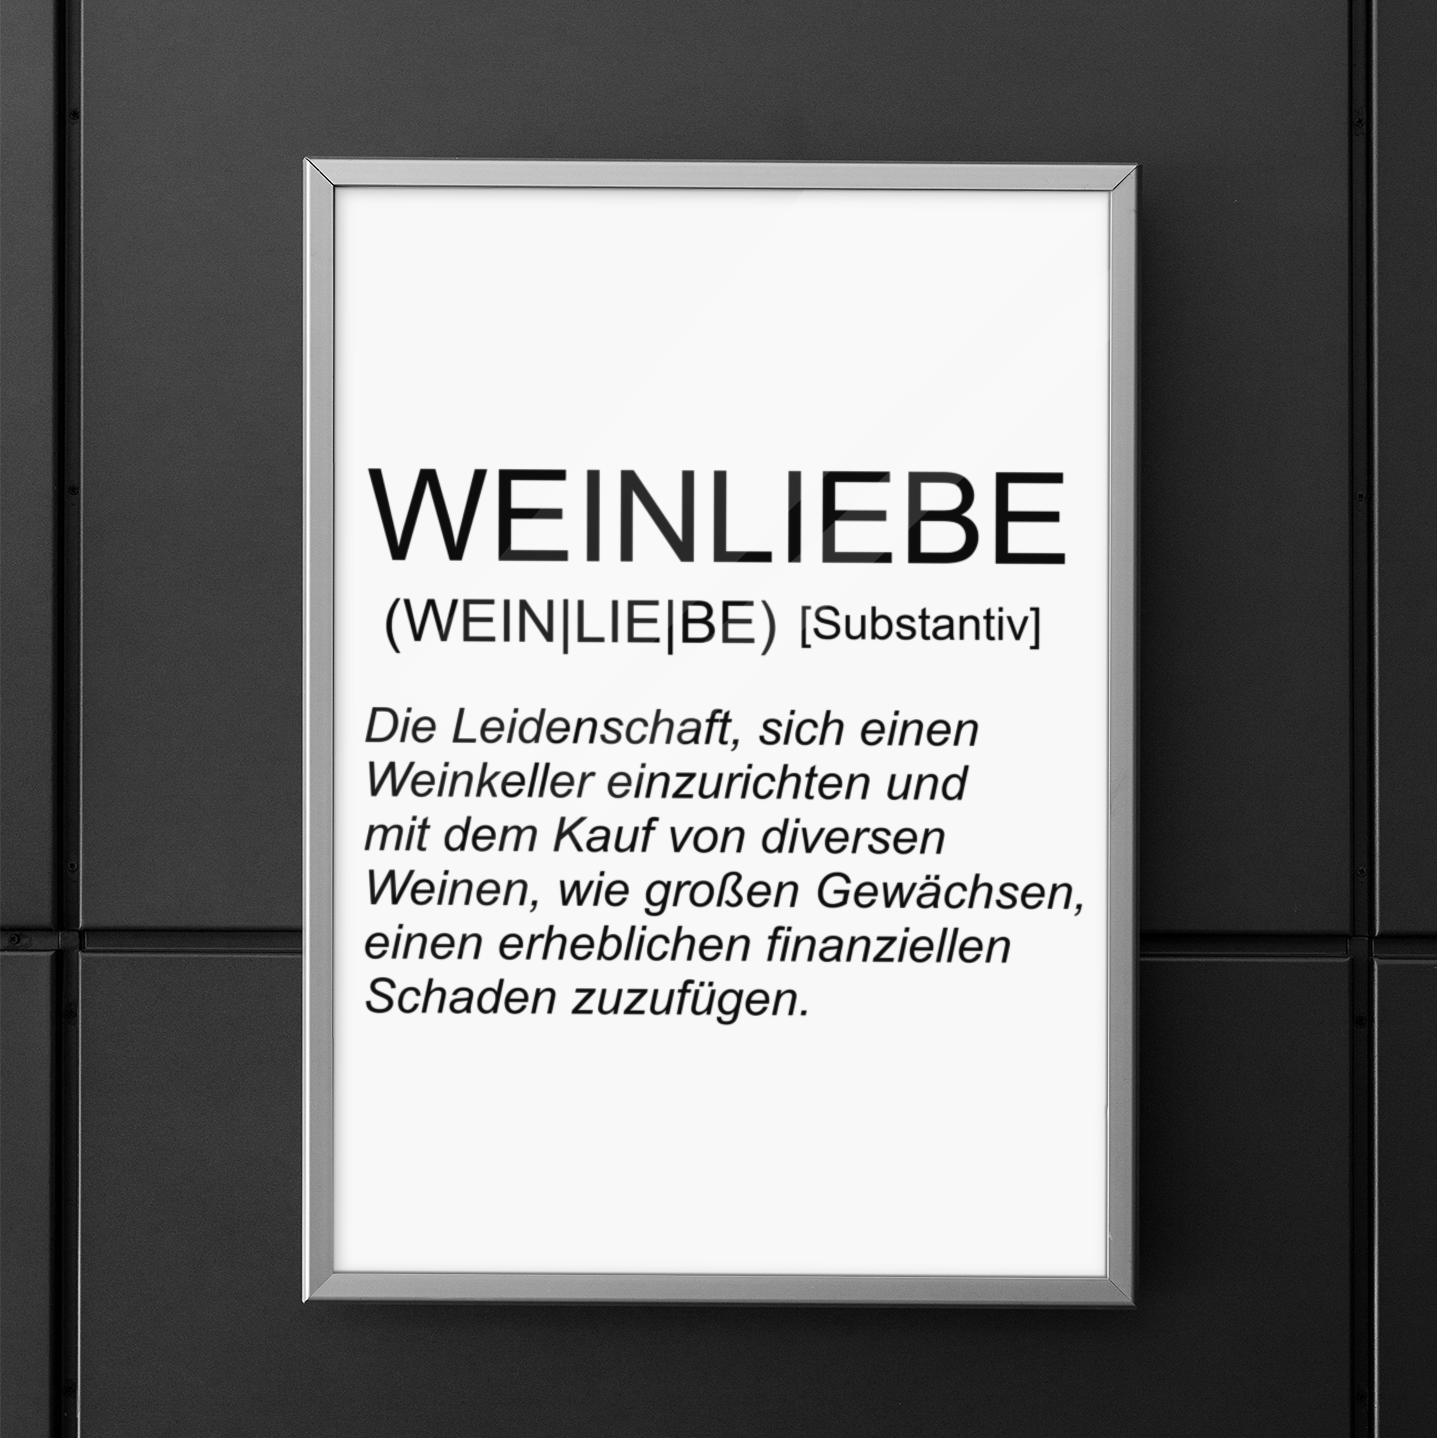 WEINLIEBE - Premium Poster 3:4 - Weinspirits